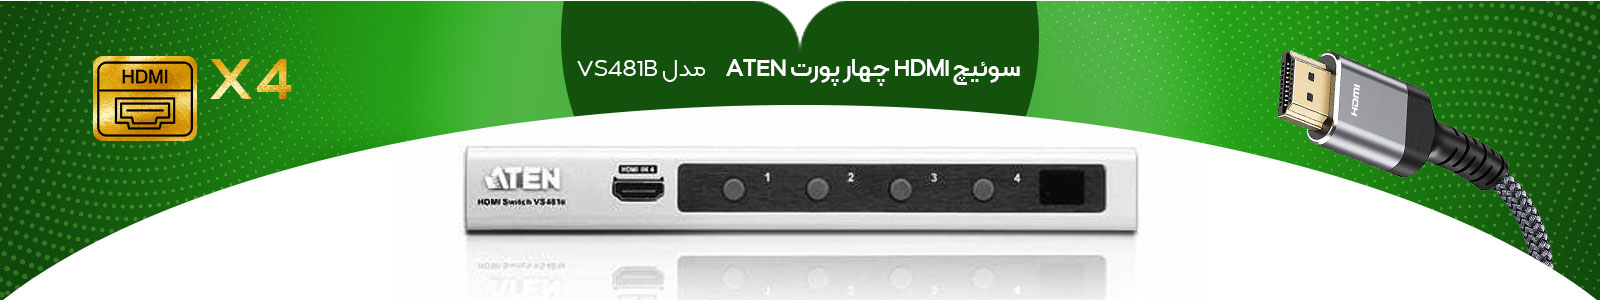 سوئیچ HDMI چهار پورت VS481B